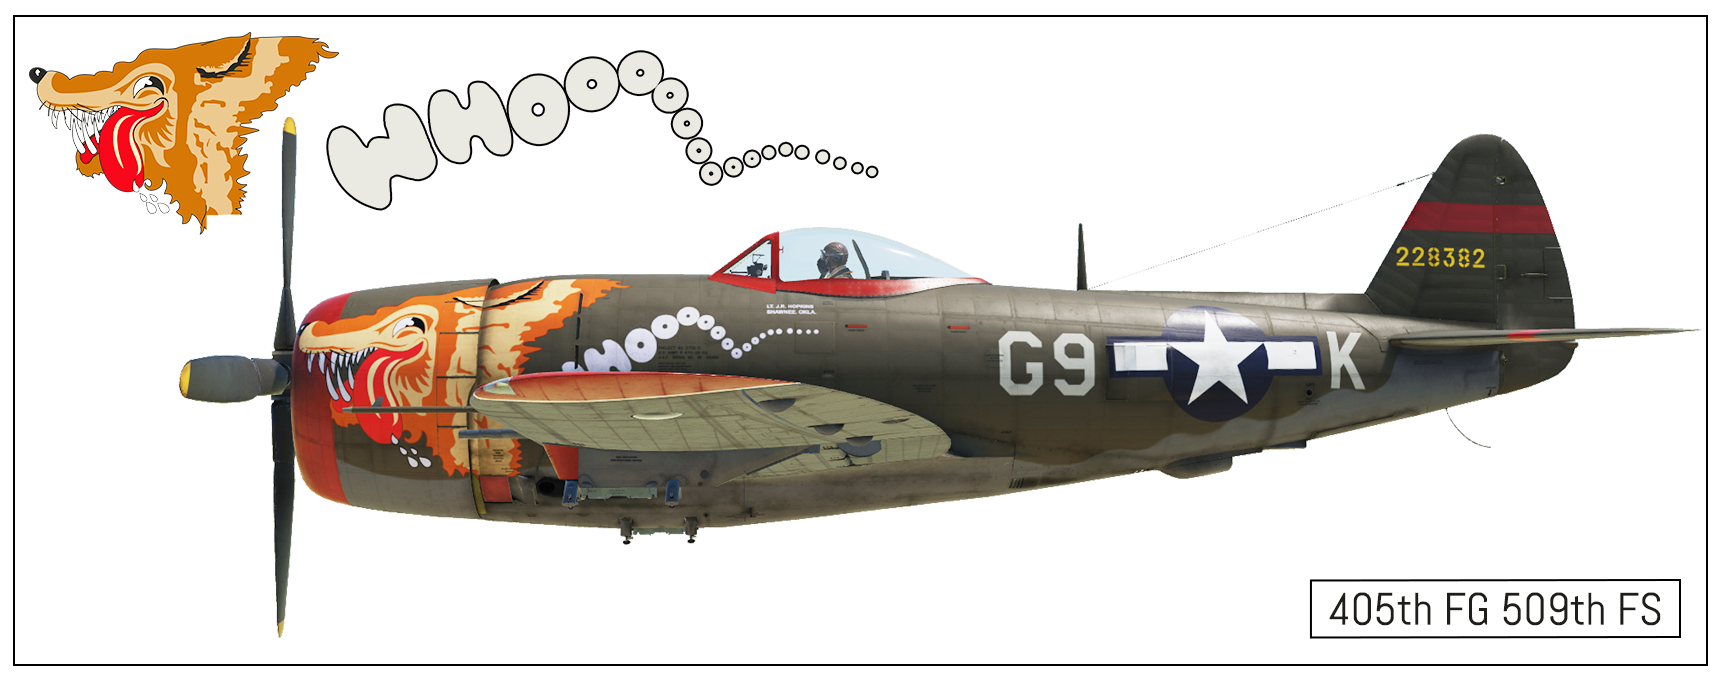 P-47D 405th FG 509th FS, Belgium, 1945 "Whoooo" *(FINAL)*